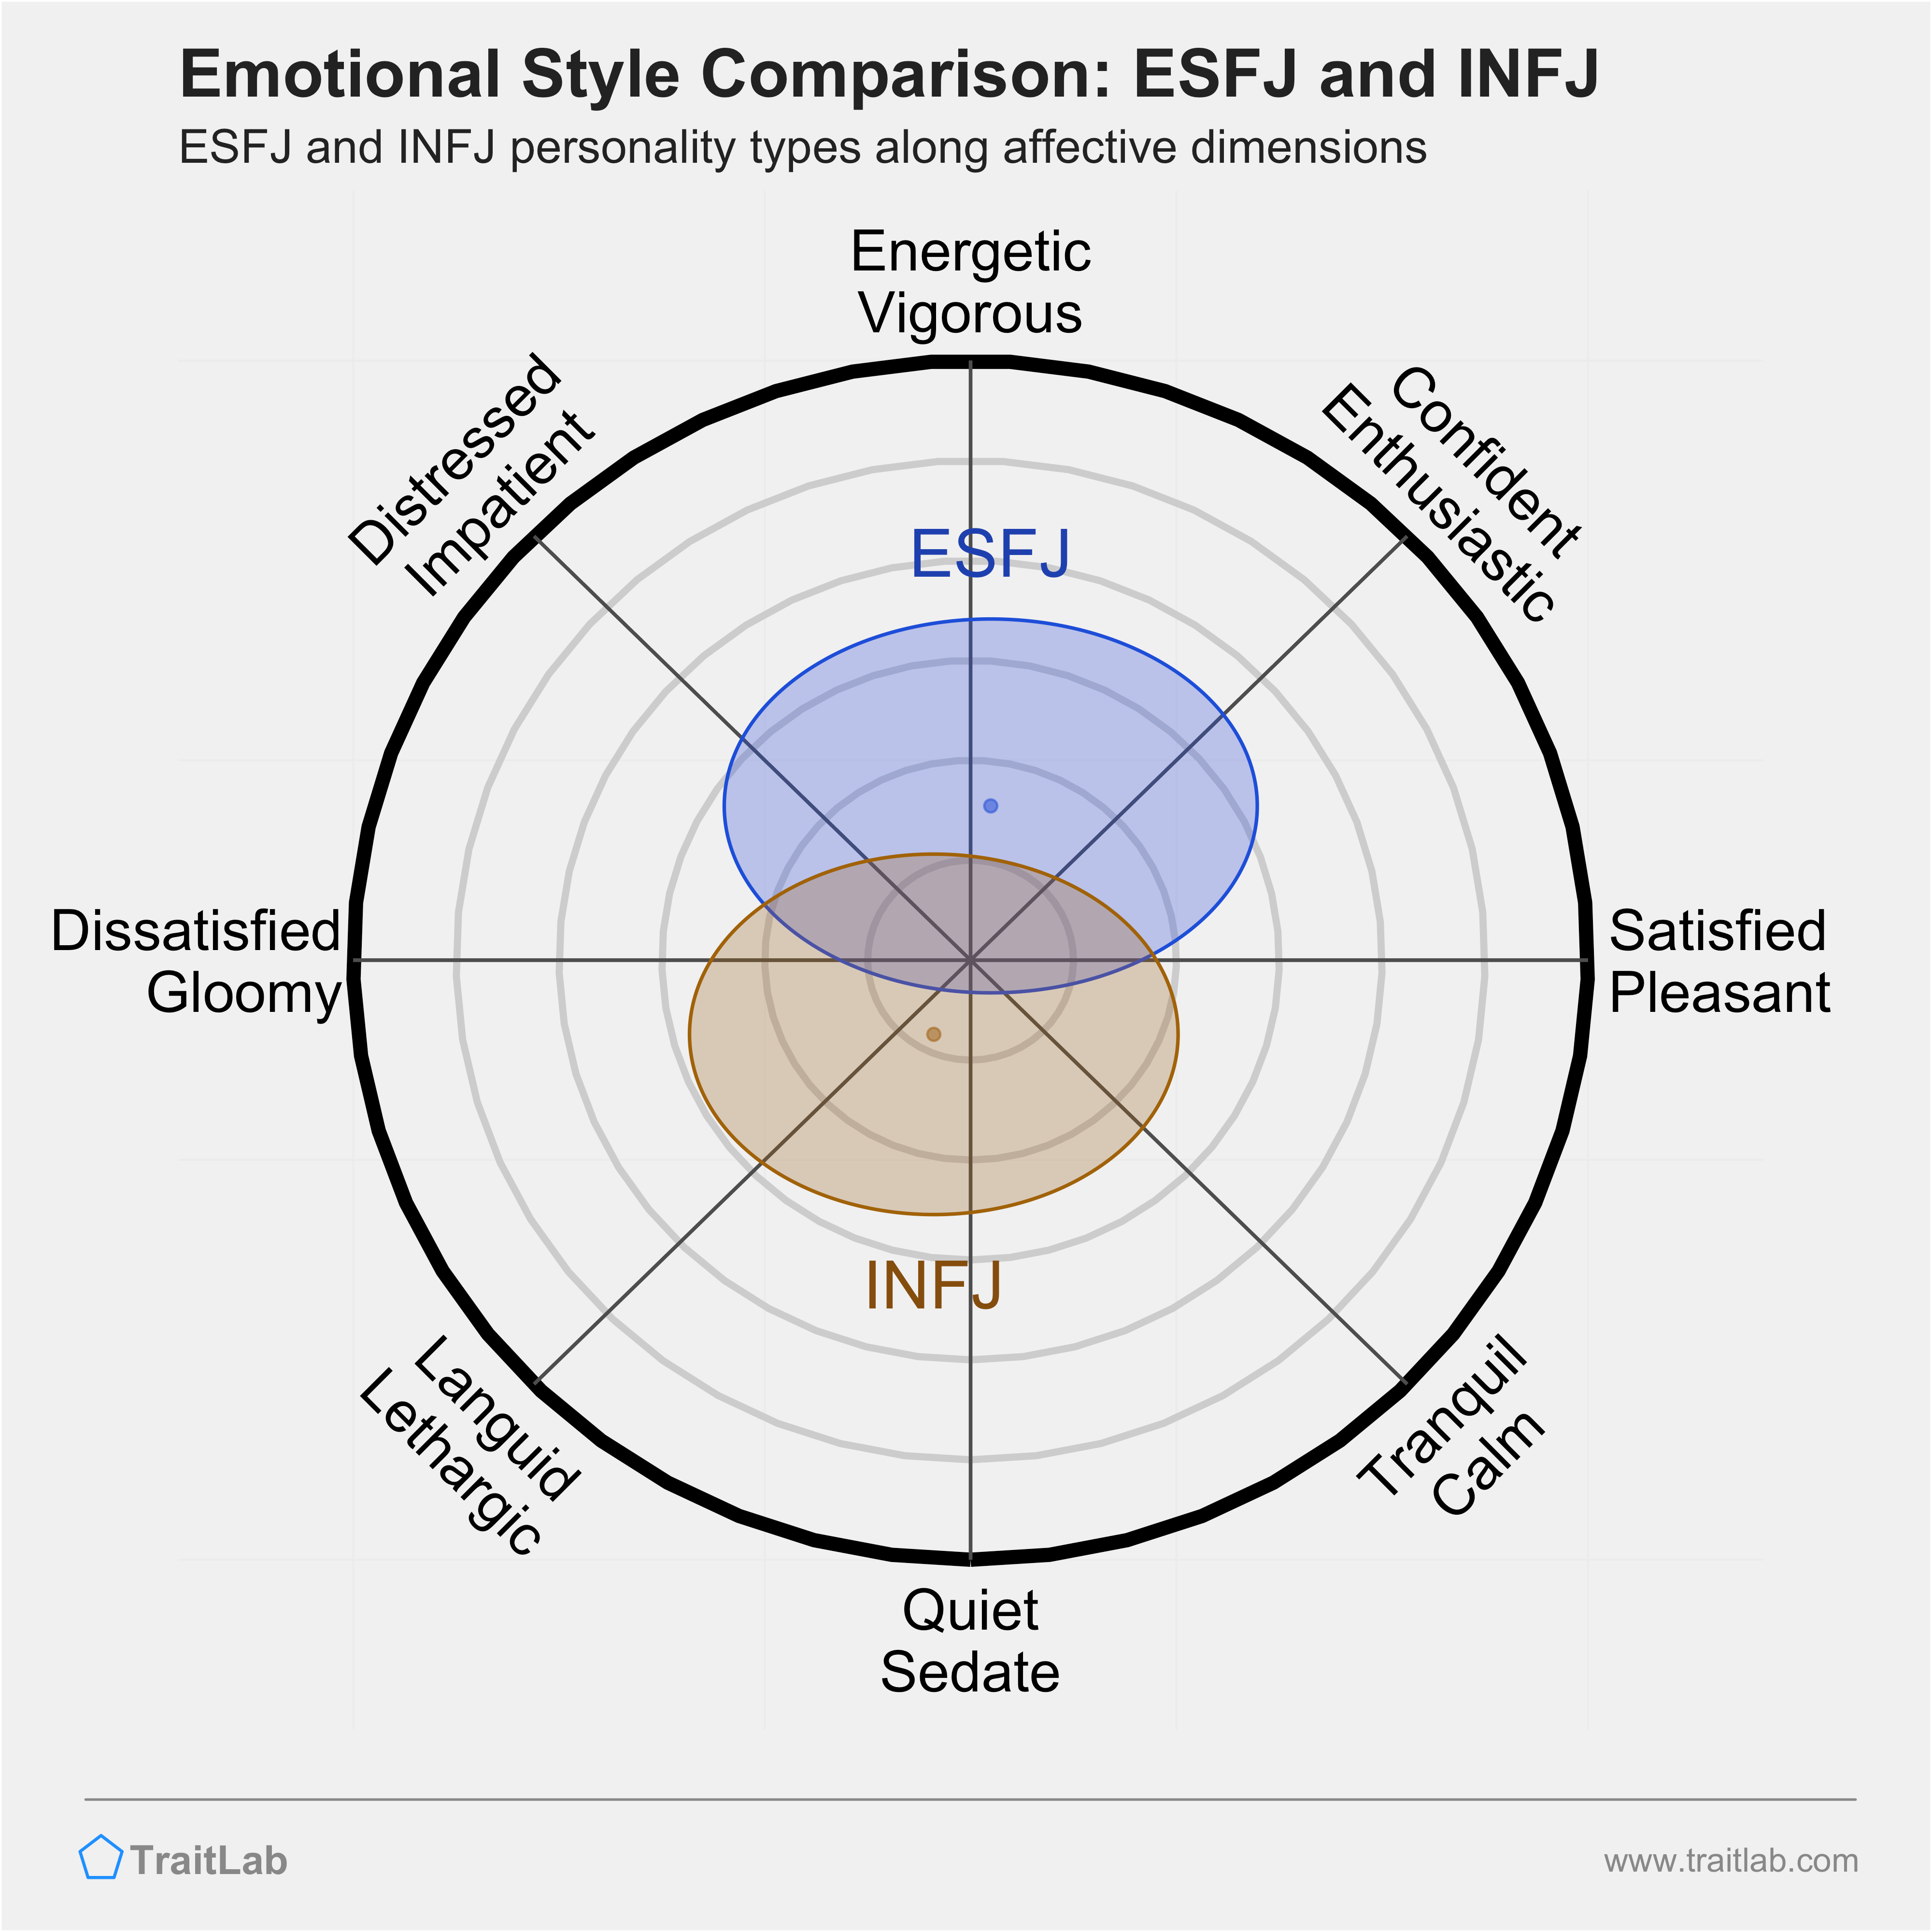 ESFJ and INFJ comparison across emotional (affective) dimensions